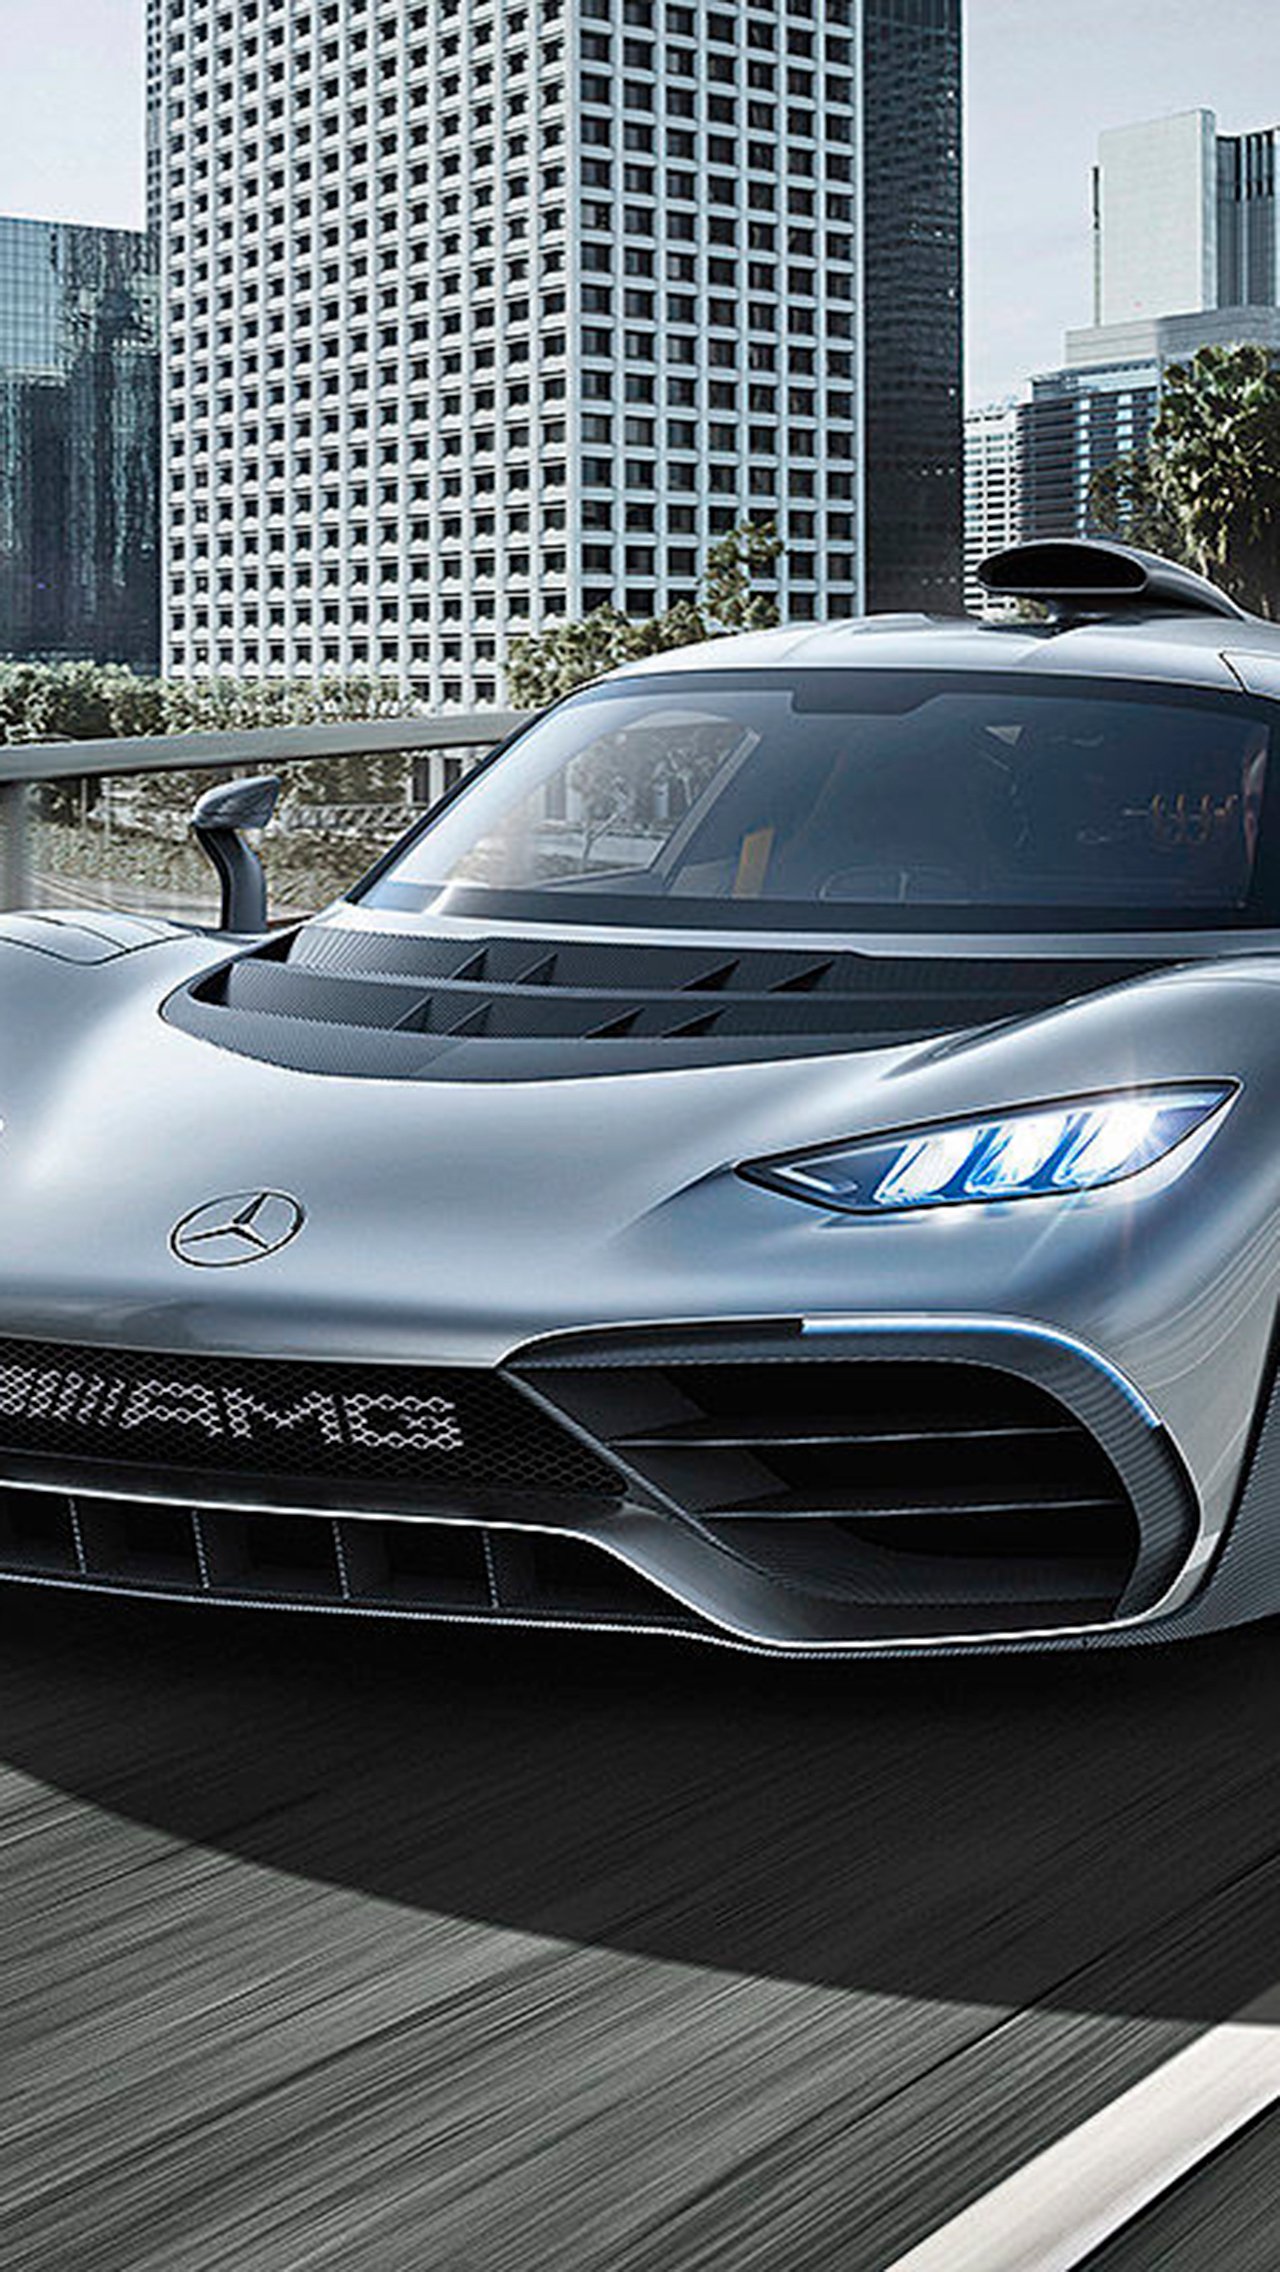 Однако недавно СМИ сообщили, что Ферстаппен ждёт доставку уже в начале 2022-го. В любом случае Mercedes-AMG One ($ 2,72 млн) Льюиса Хэмилтона — больше не самый дорогой автомобиль в мире Формулы-1.